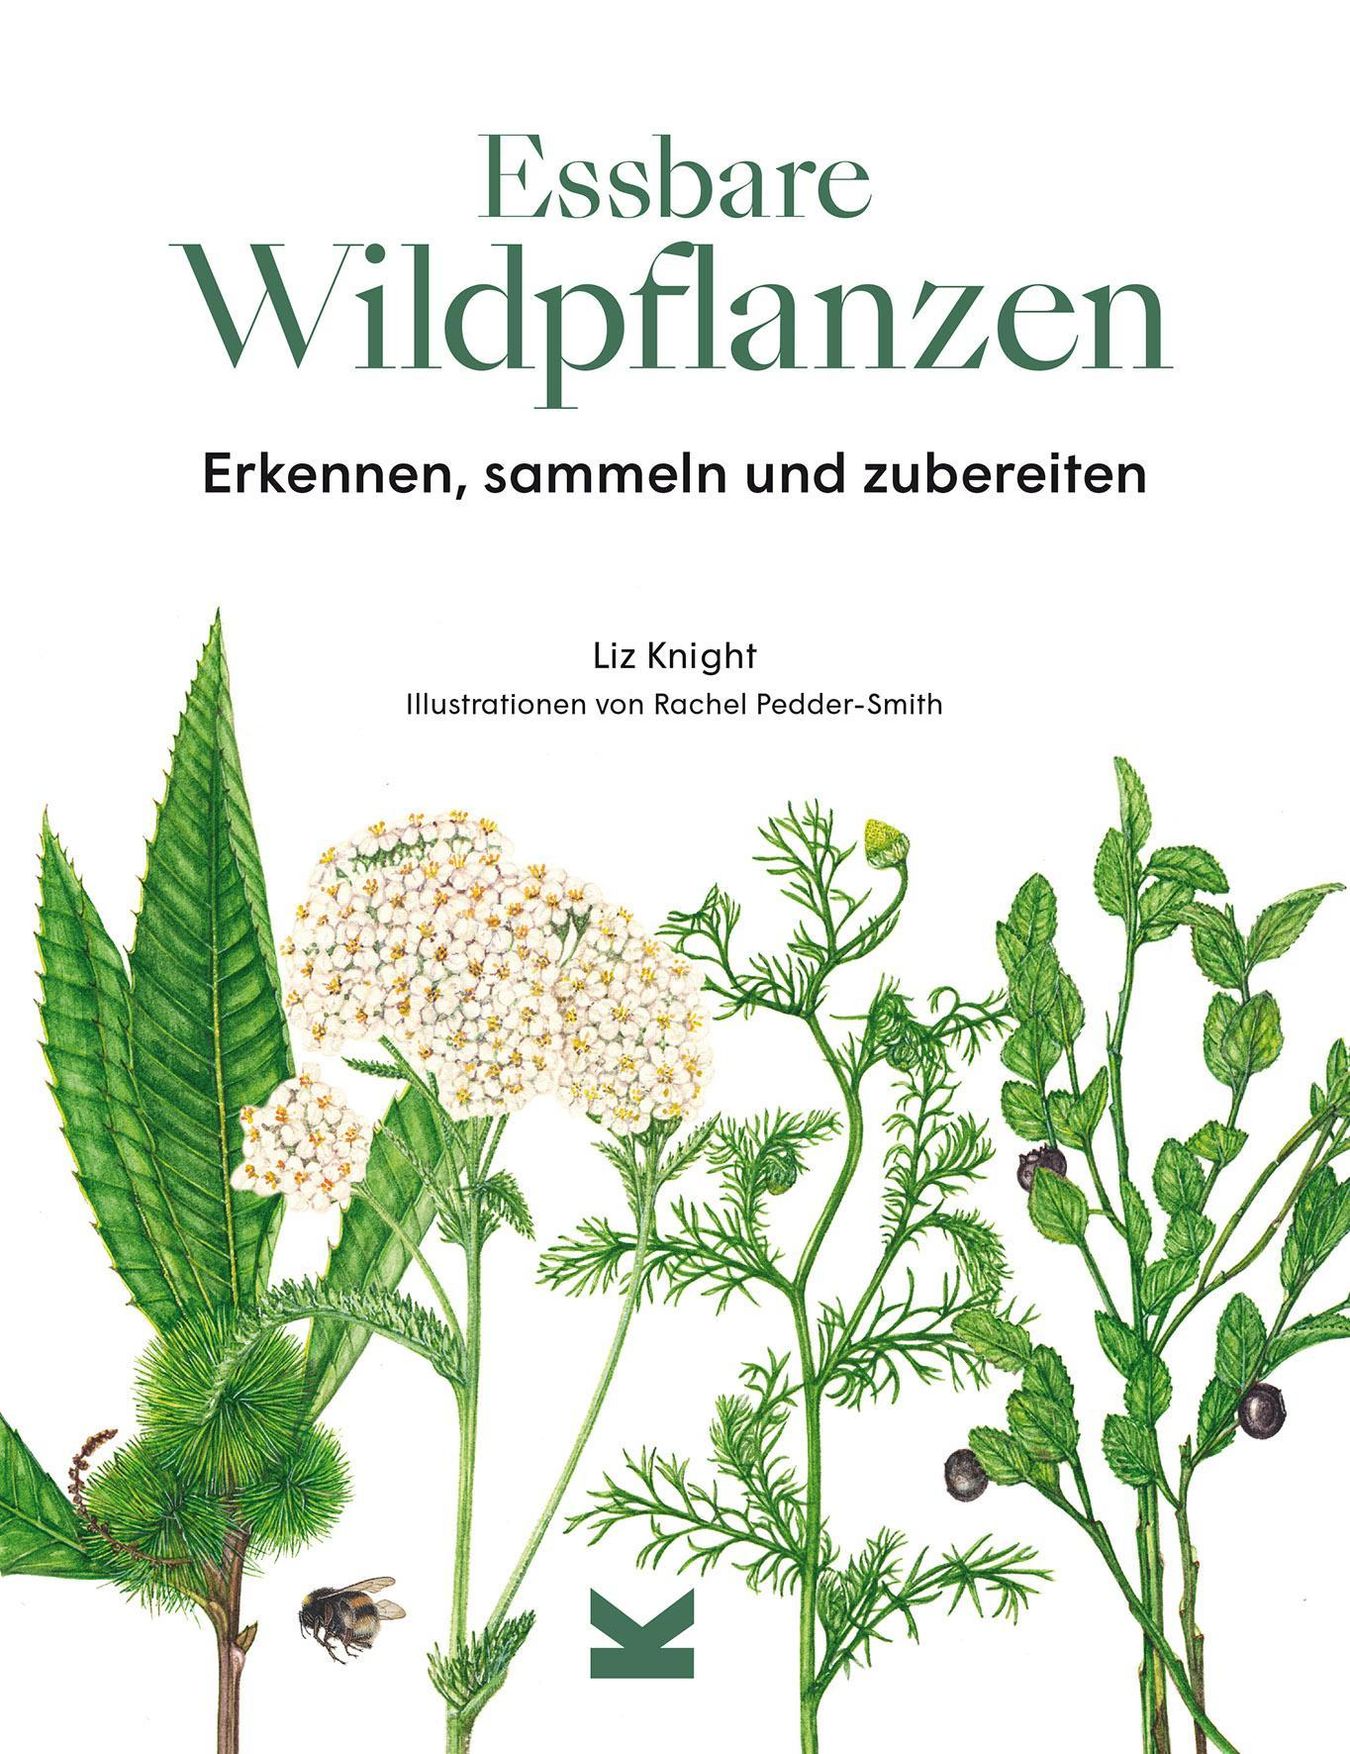 Essbare Wildpflanzen Buch von Liz Knight versandkostenfrei - Weltbild.at